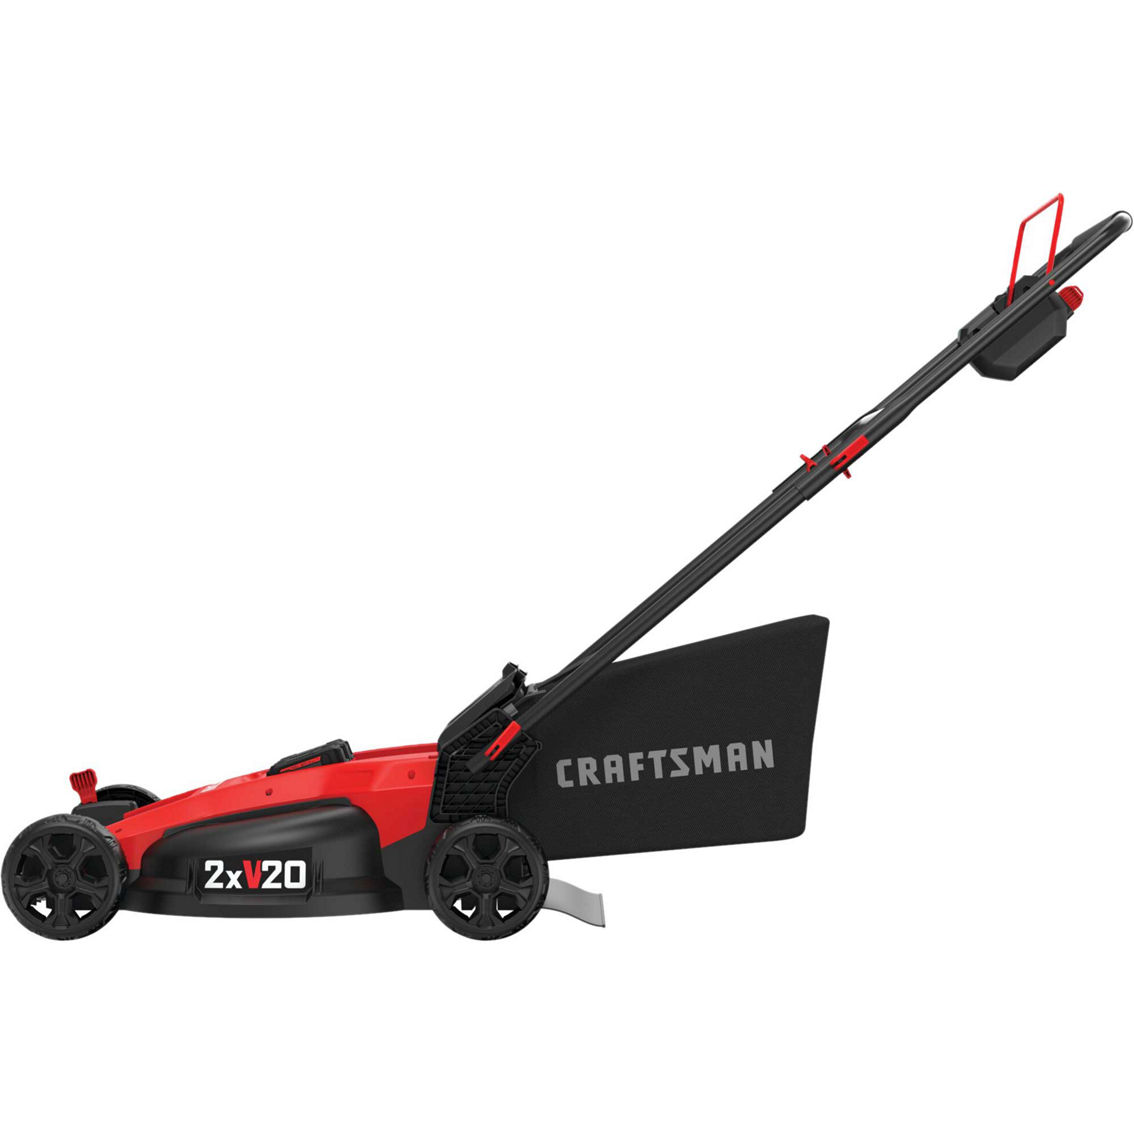 Craftsman 2x20V Brushless Cordless Push Mower - Image 2 of 5